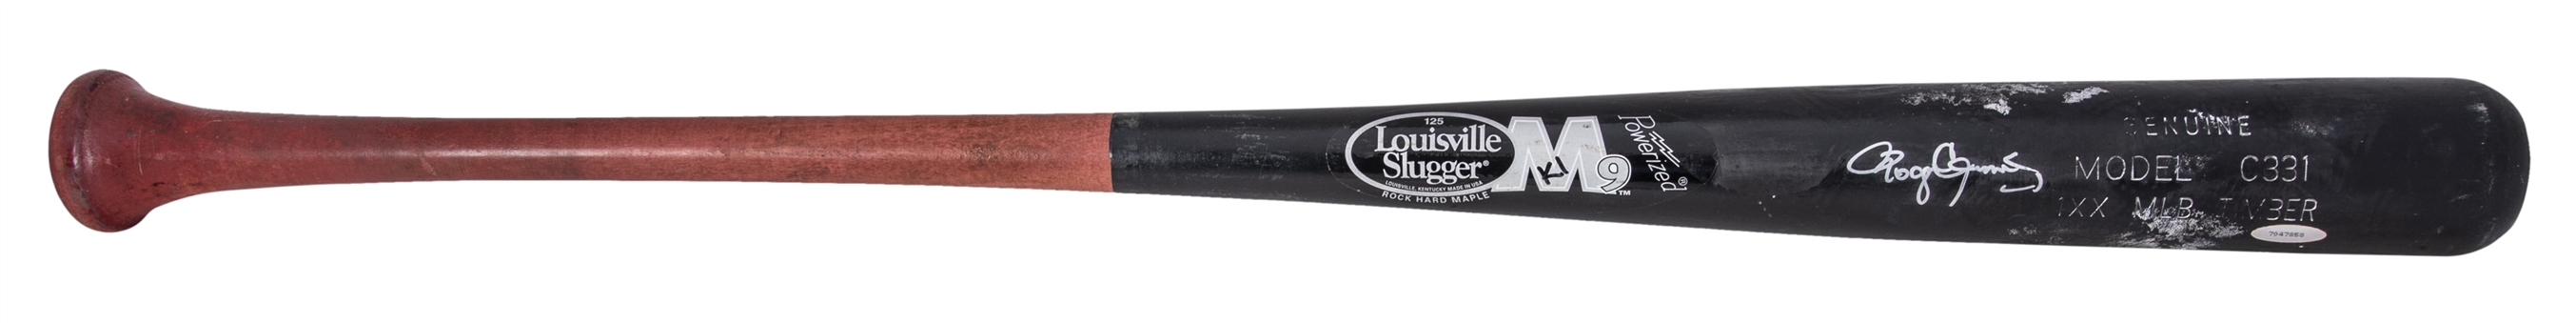 2004-2007 Roger Clemens Game Used & Signed Louisville Slugger C331 Model Bat (PSA/DNA, McNamee LOA & Tristar)